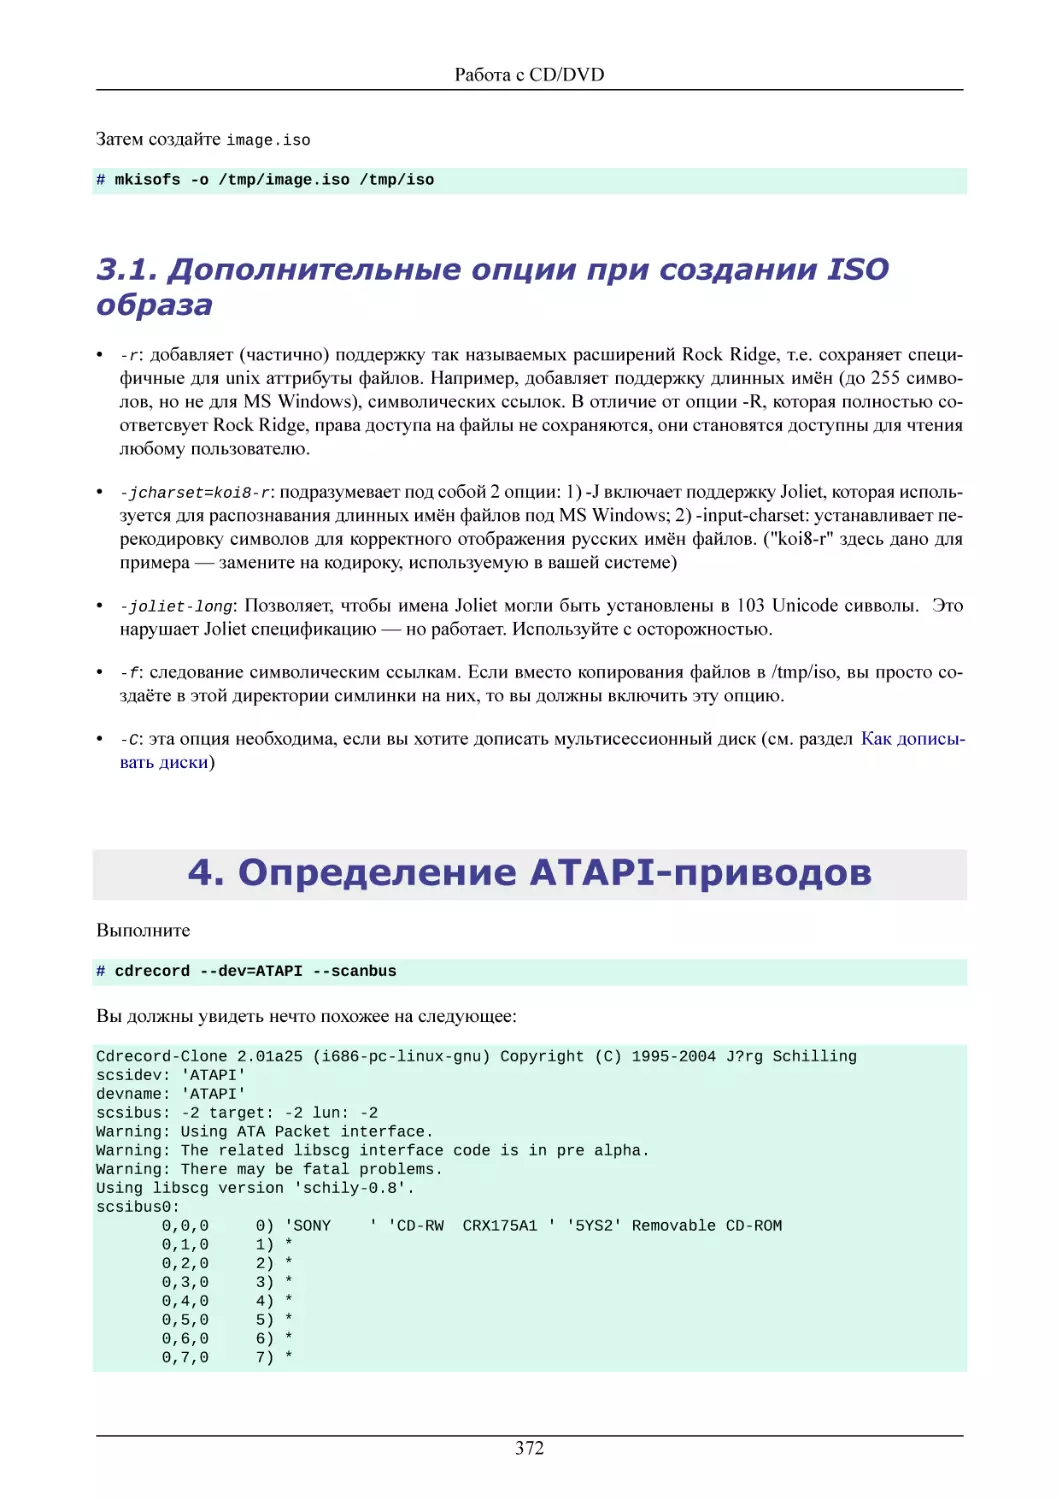 Дополнительные опции при создании ISO образа
Определение ATAPI-приводов